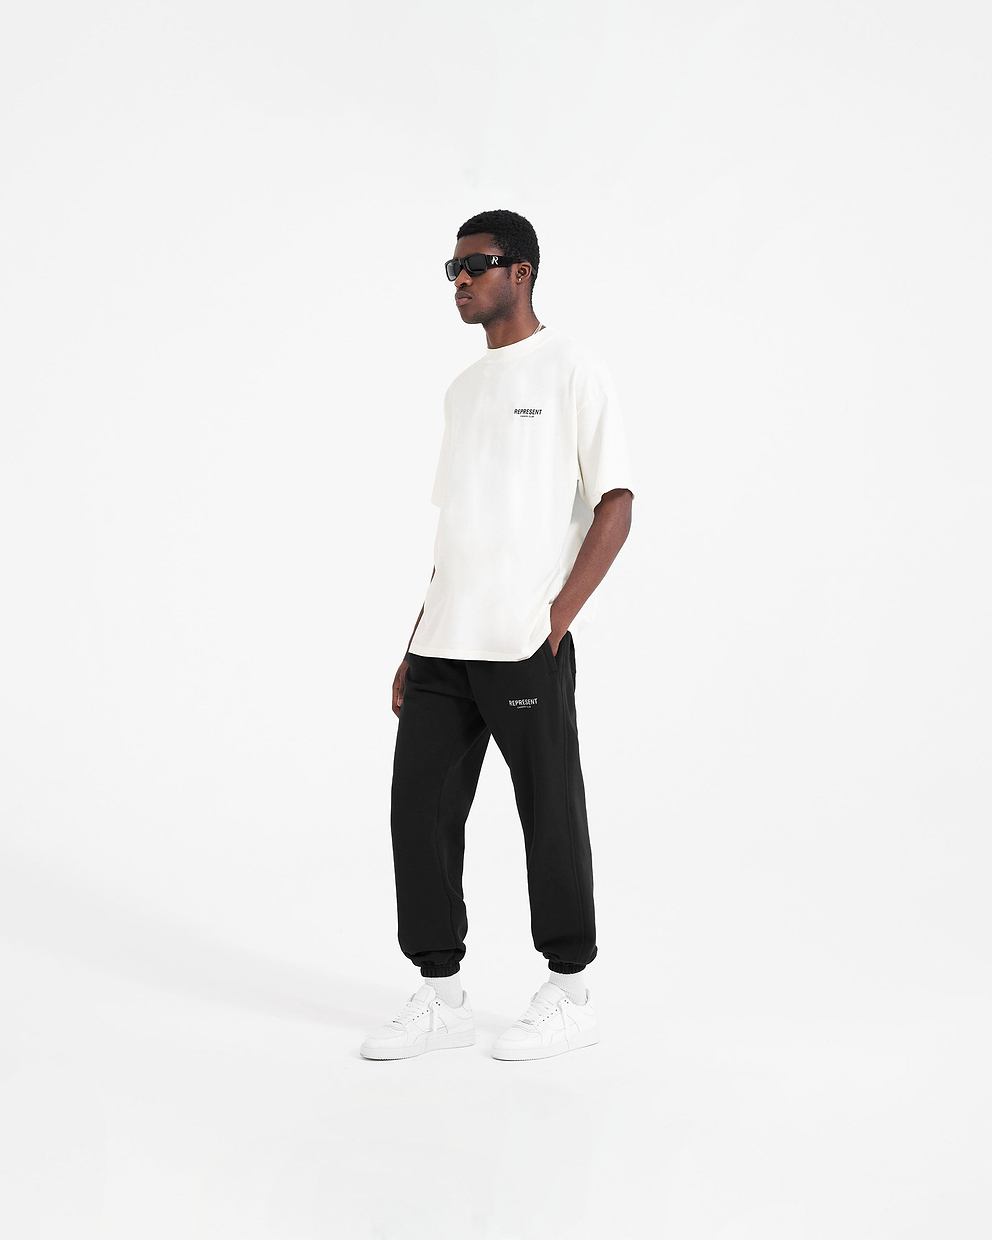 Represent Blank Sweatpant - Black - Represemt Clo® Online Shop